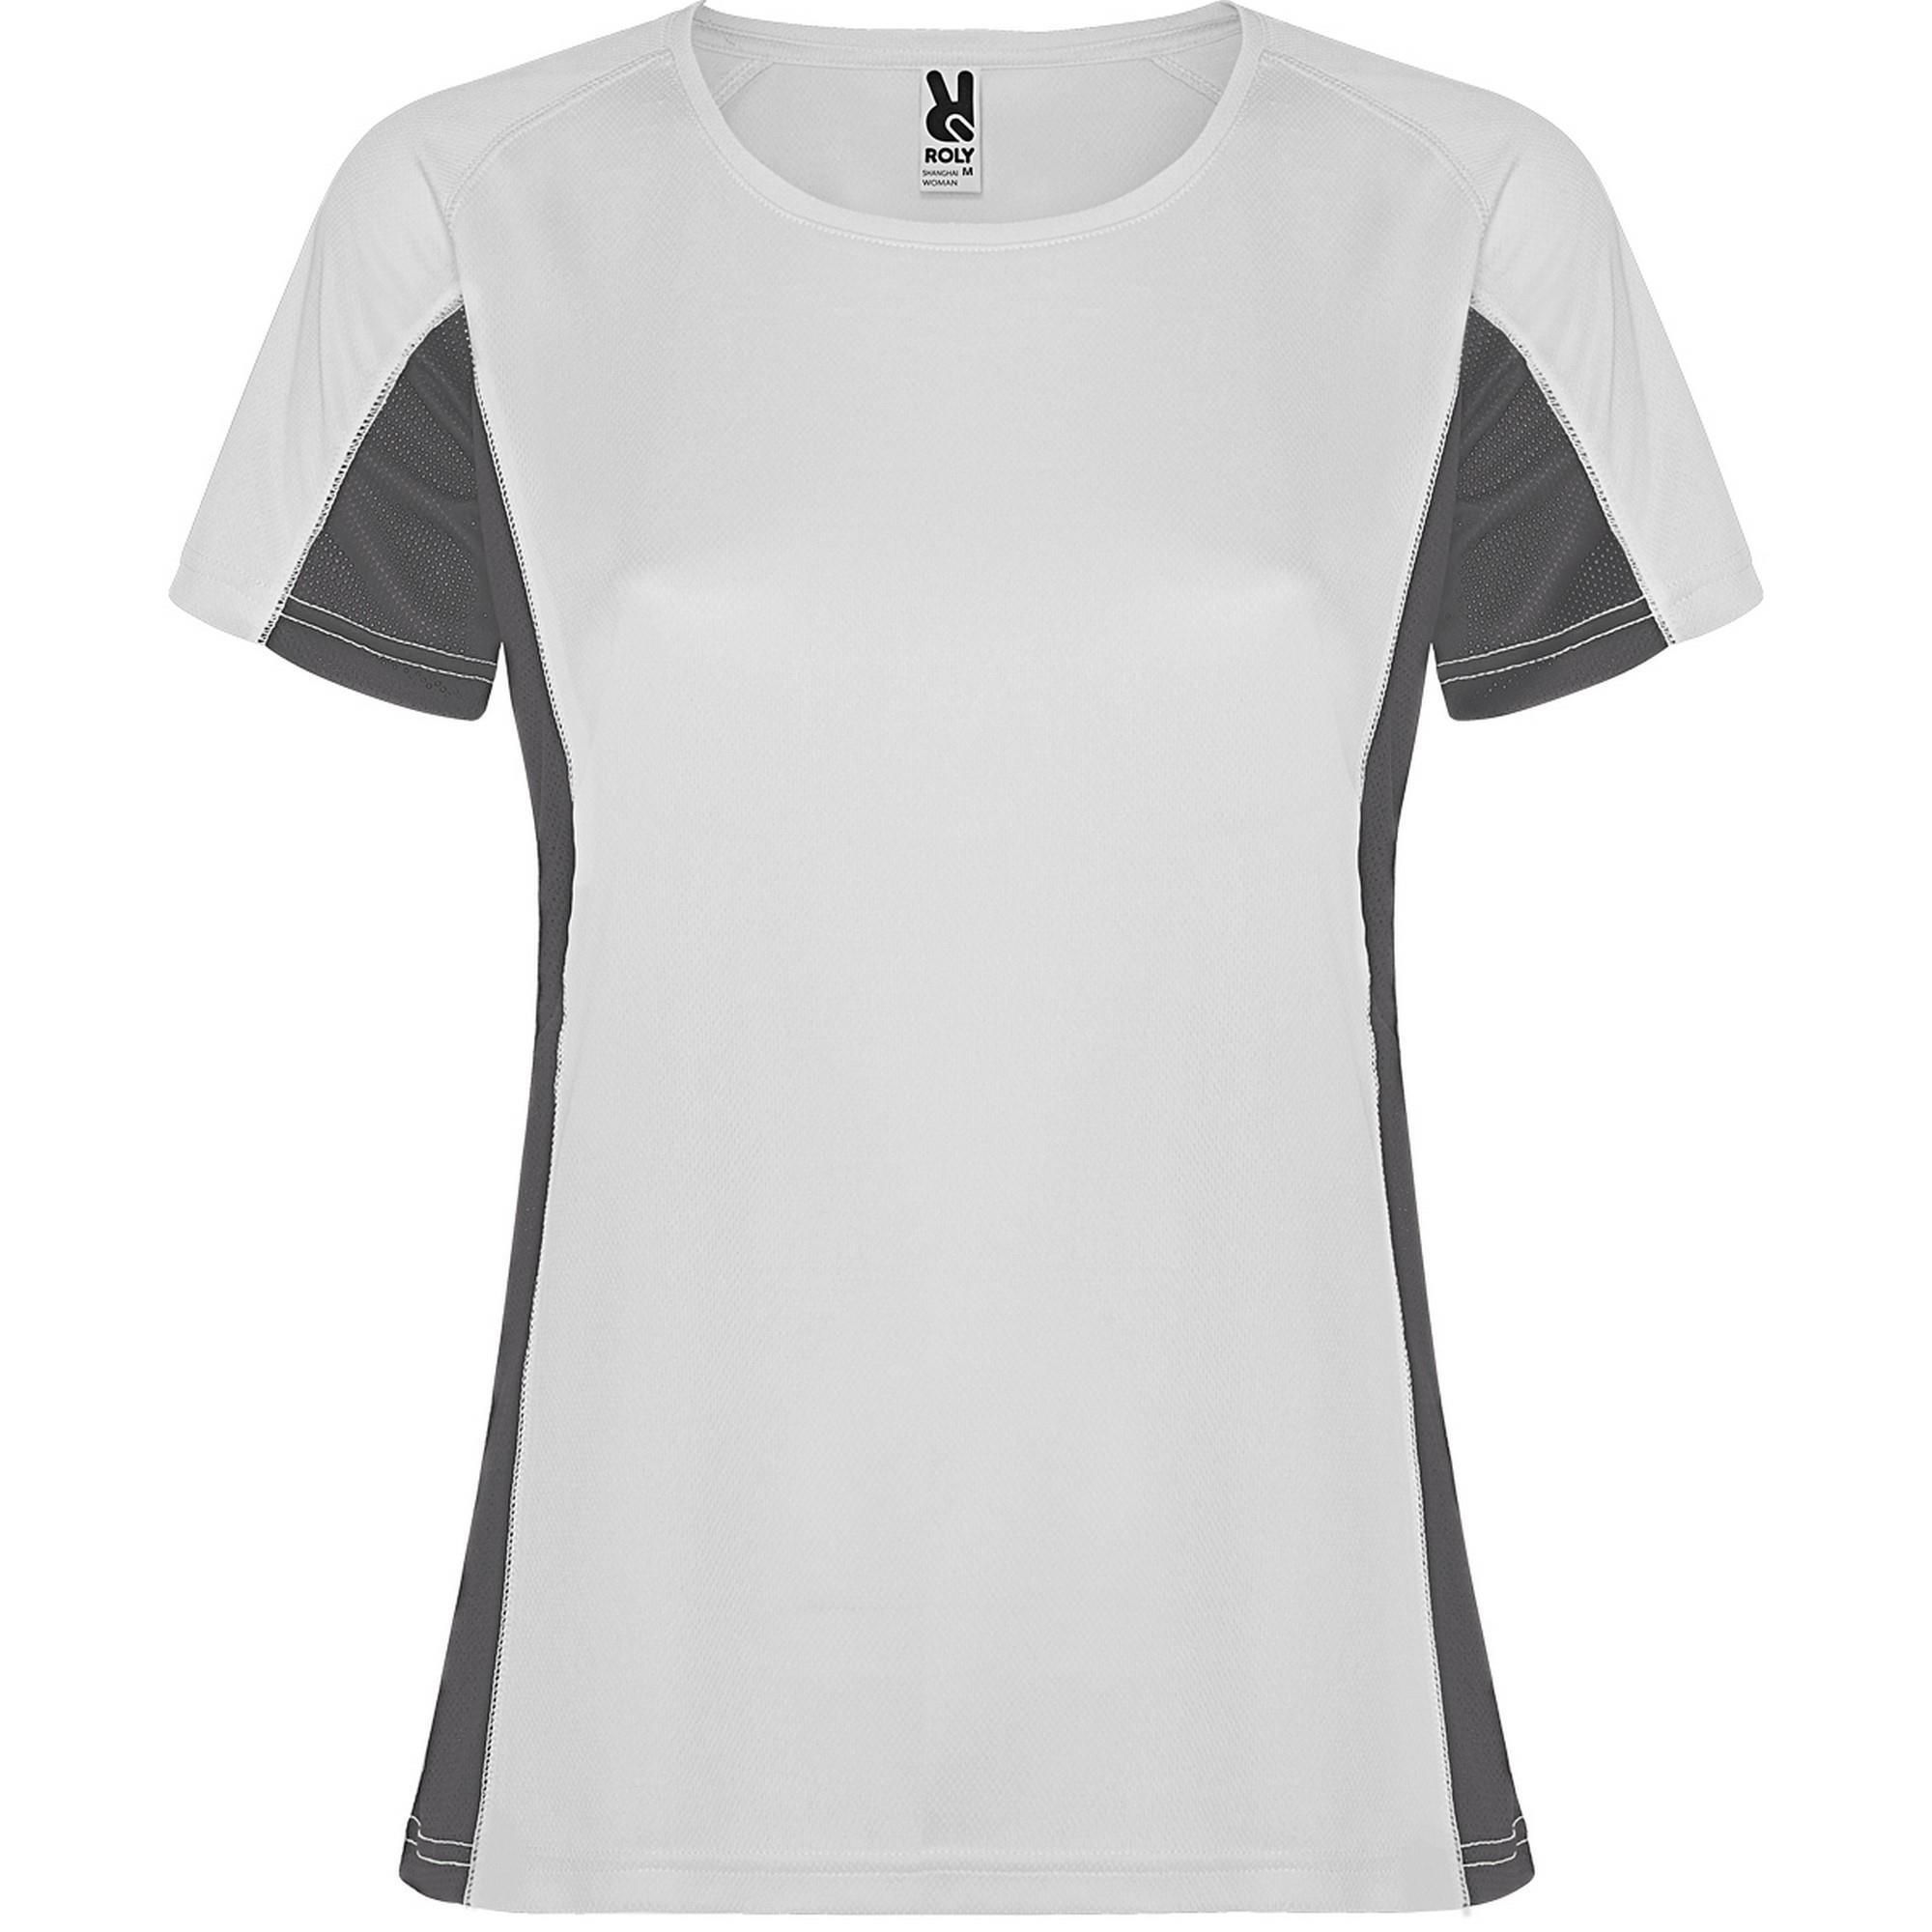 Fraaie sport dames T-shirt wit met donkergrijs